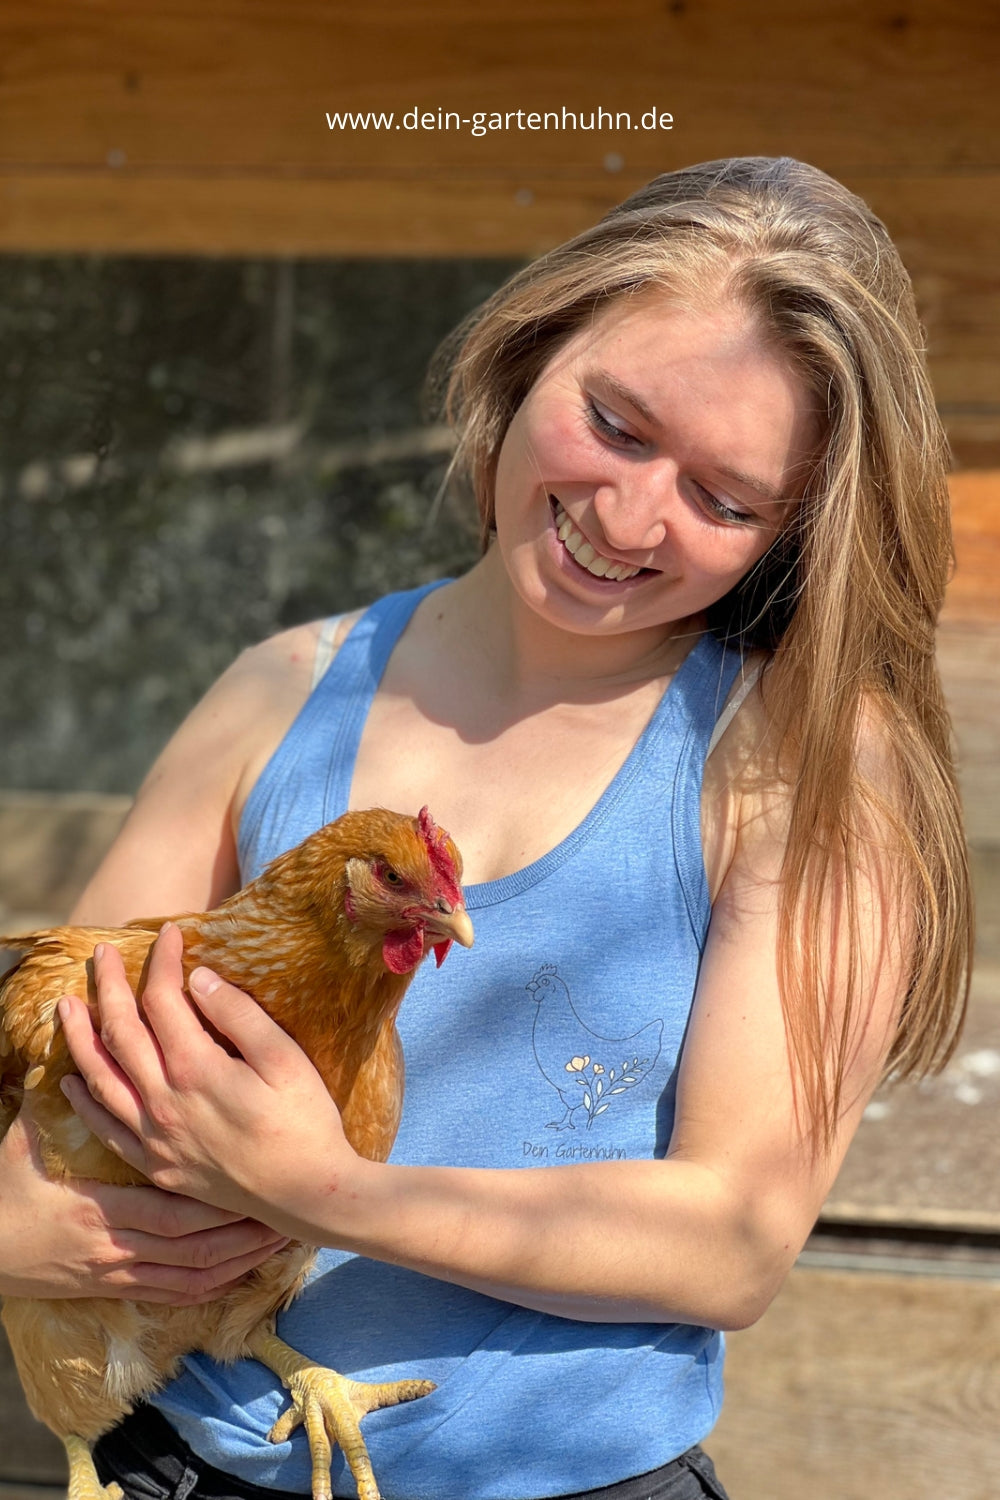 Abgebildet bin ich mit einem Huhn auf dem Arm.